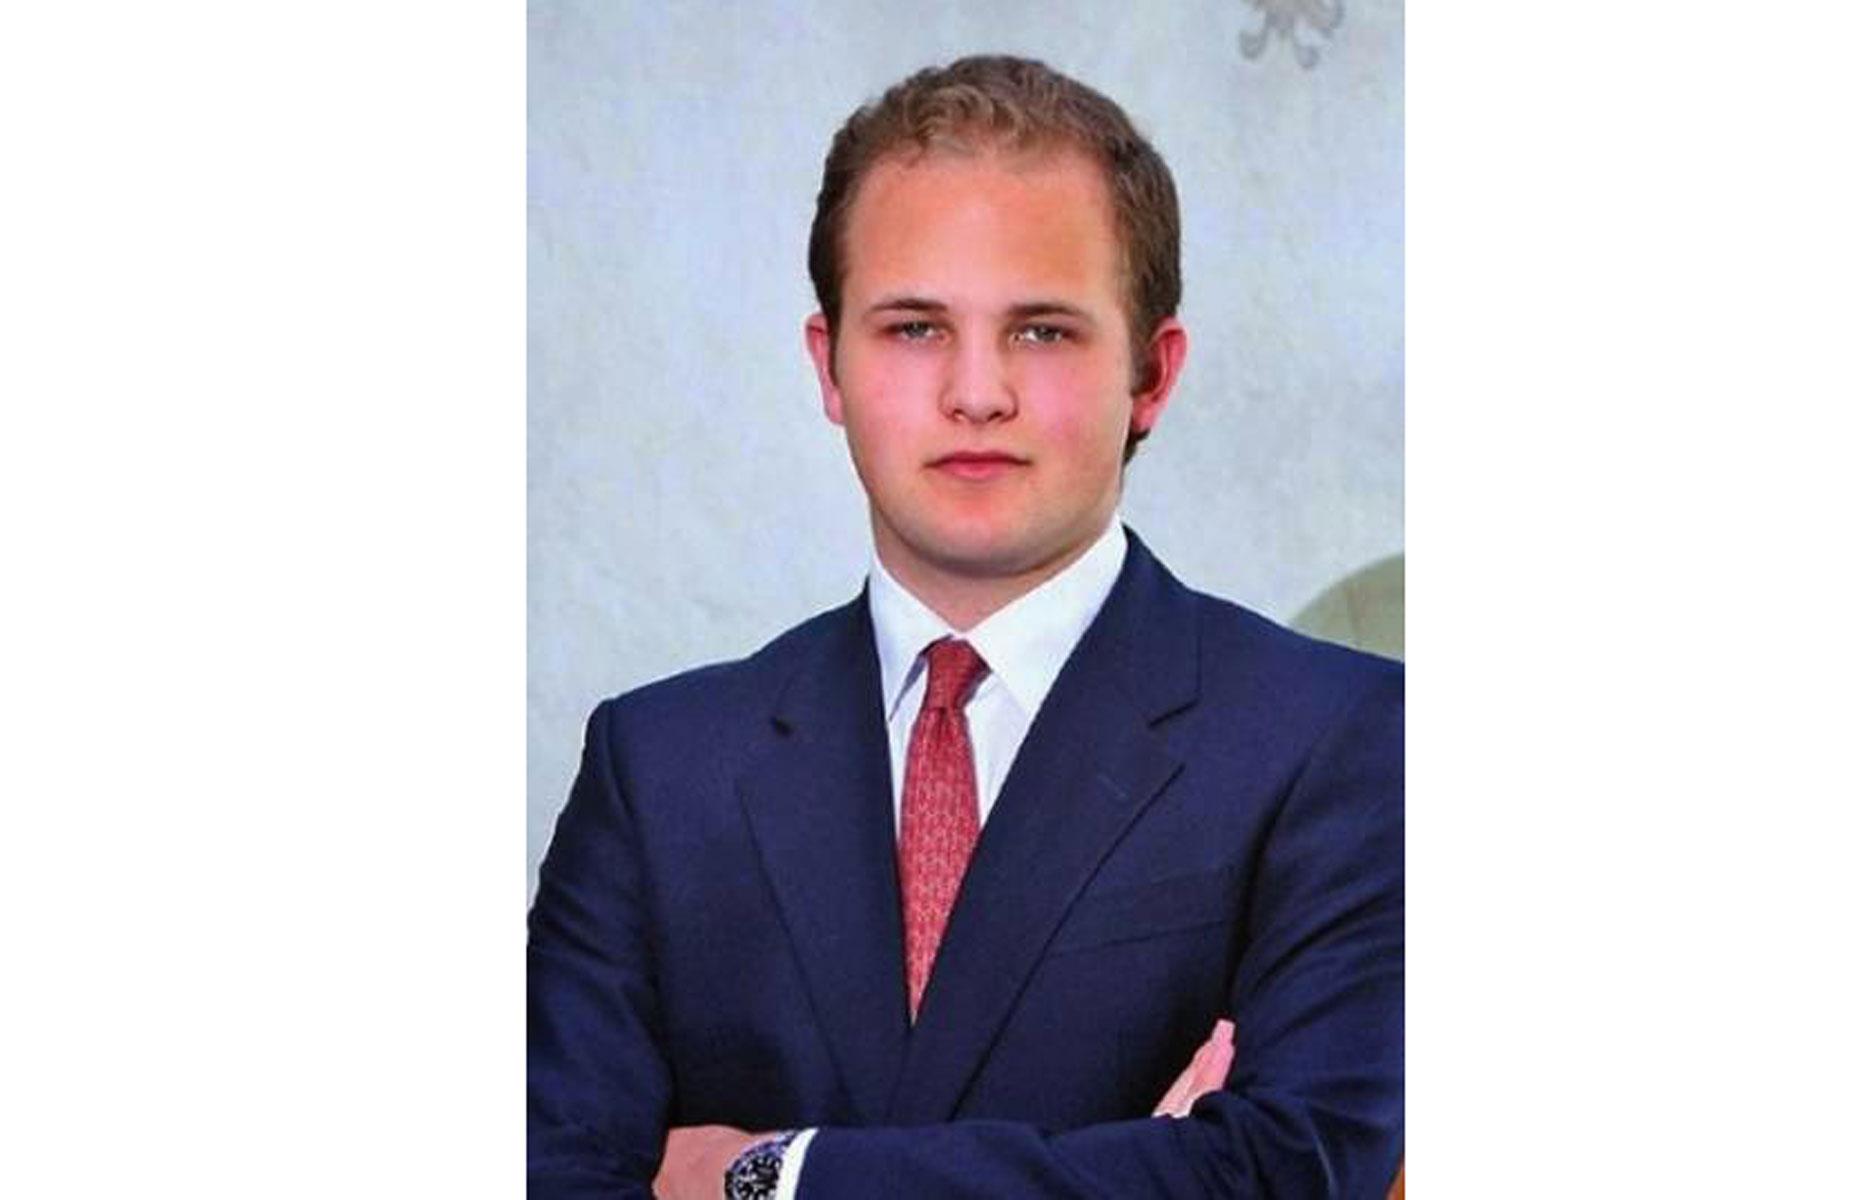 Prince Joseph Wenzel of Liechtenstein, 23, future net worth: up to $5 billion (£3.8bn)